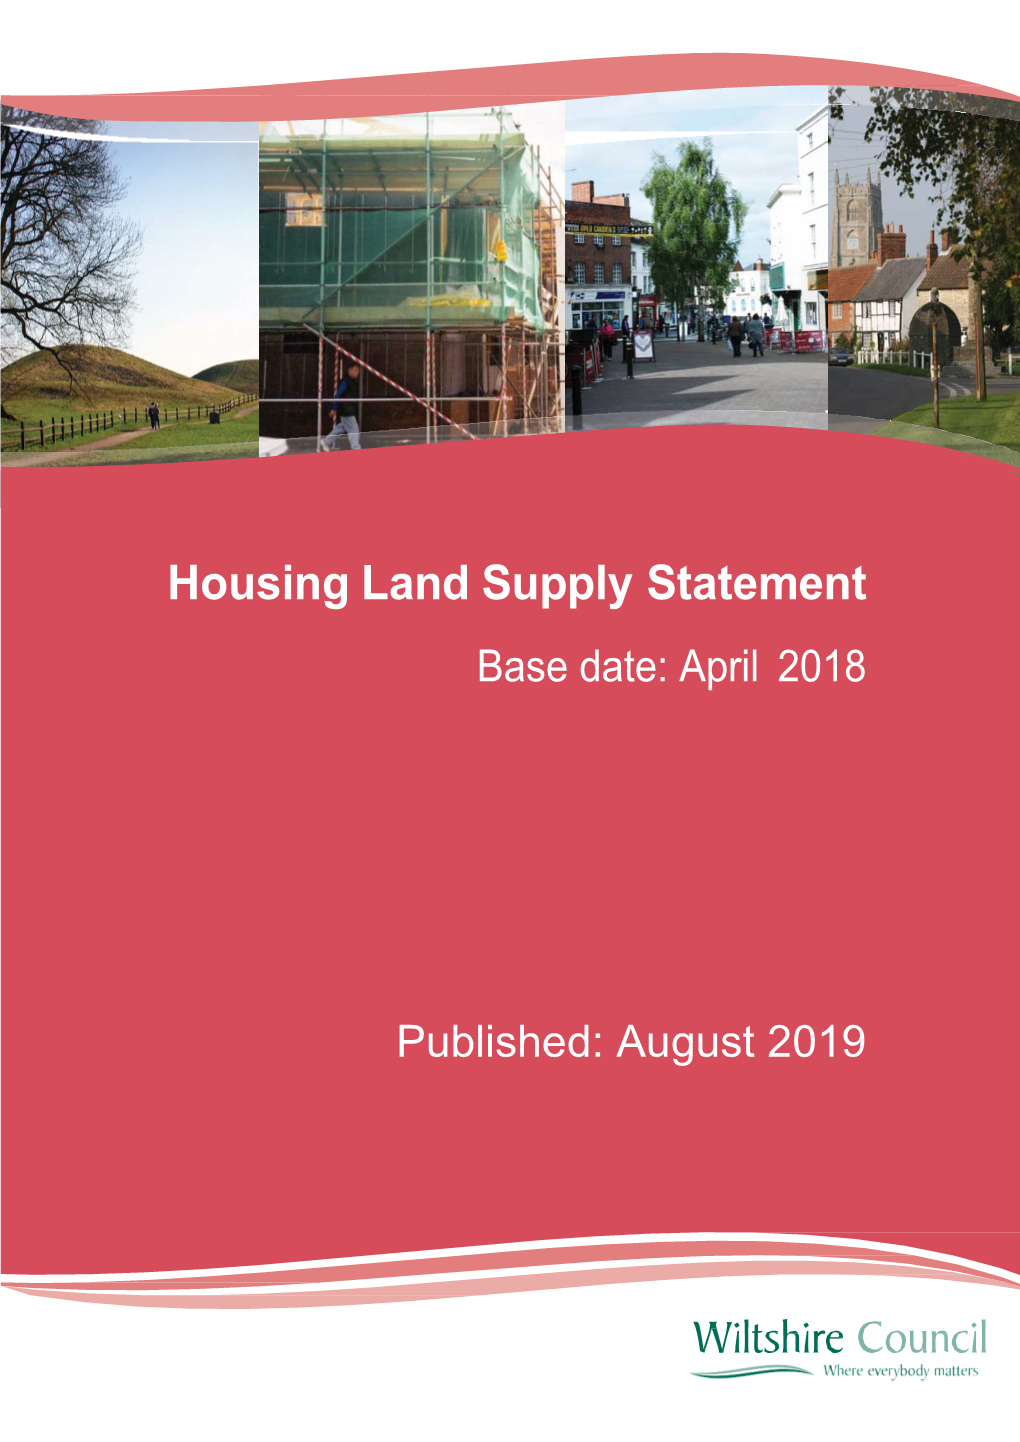 Wiltshire Housing Land Supply Statement 2018